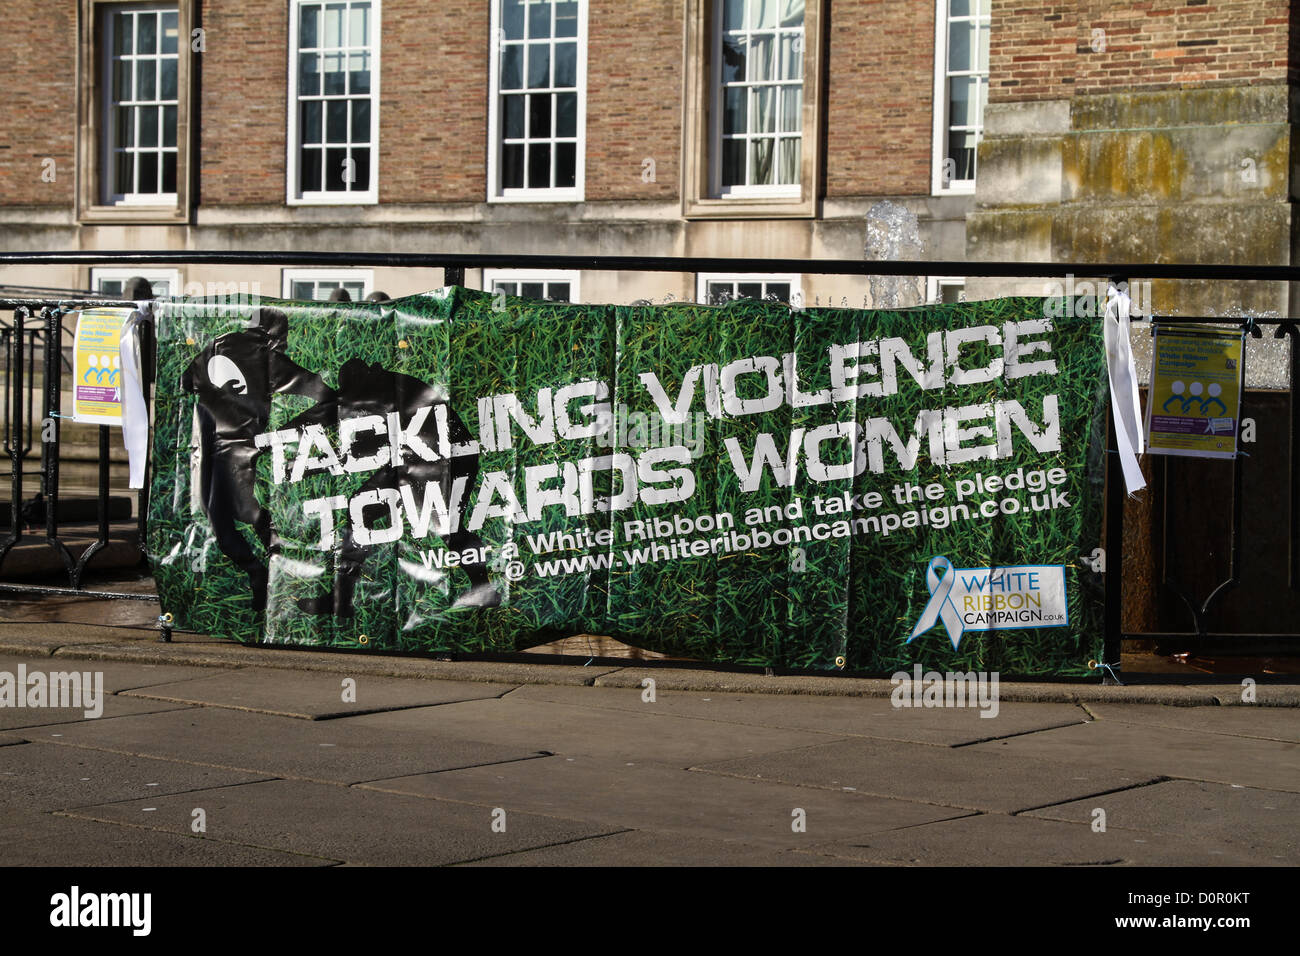 Violence Against Women - White Ribbon